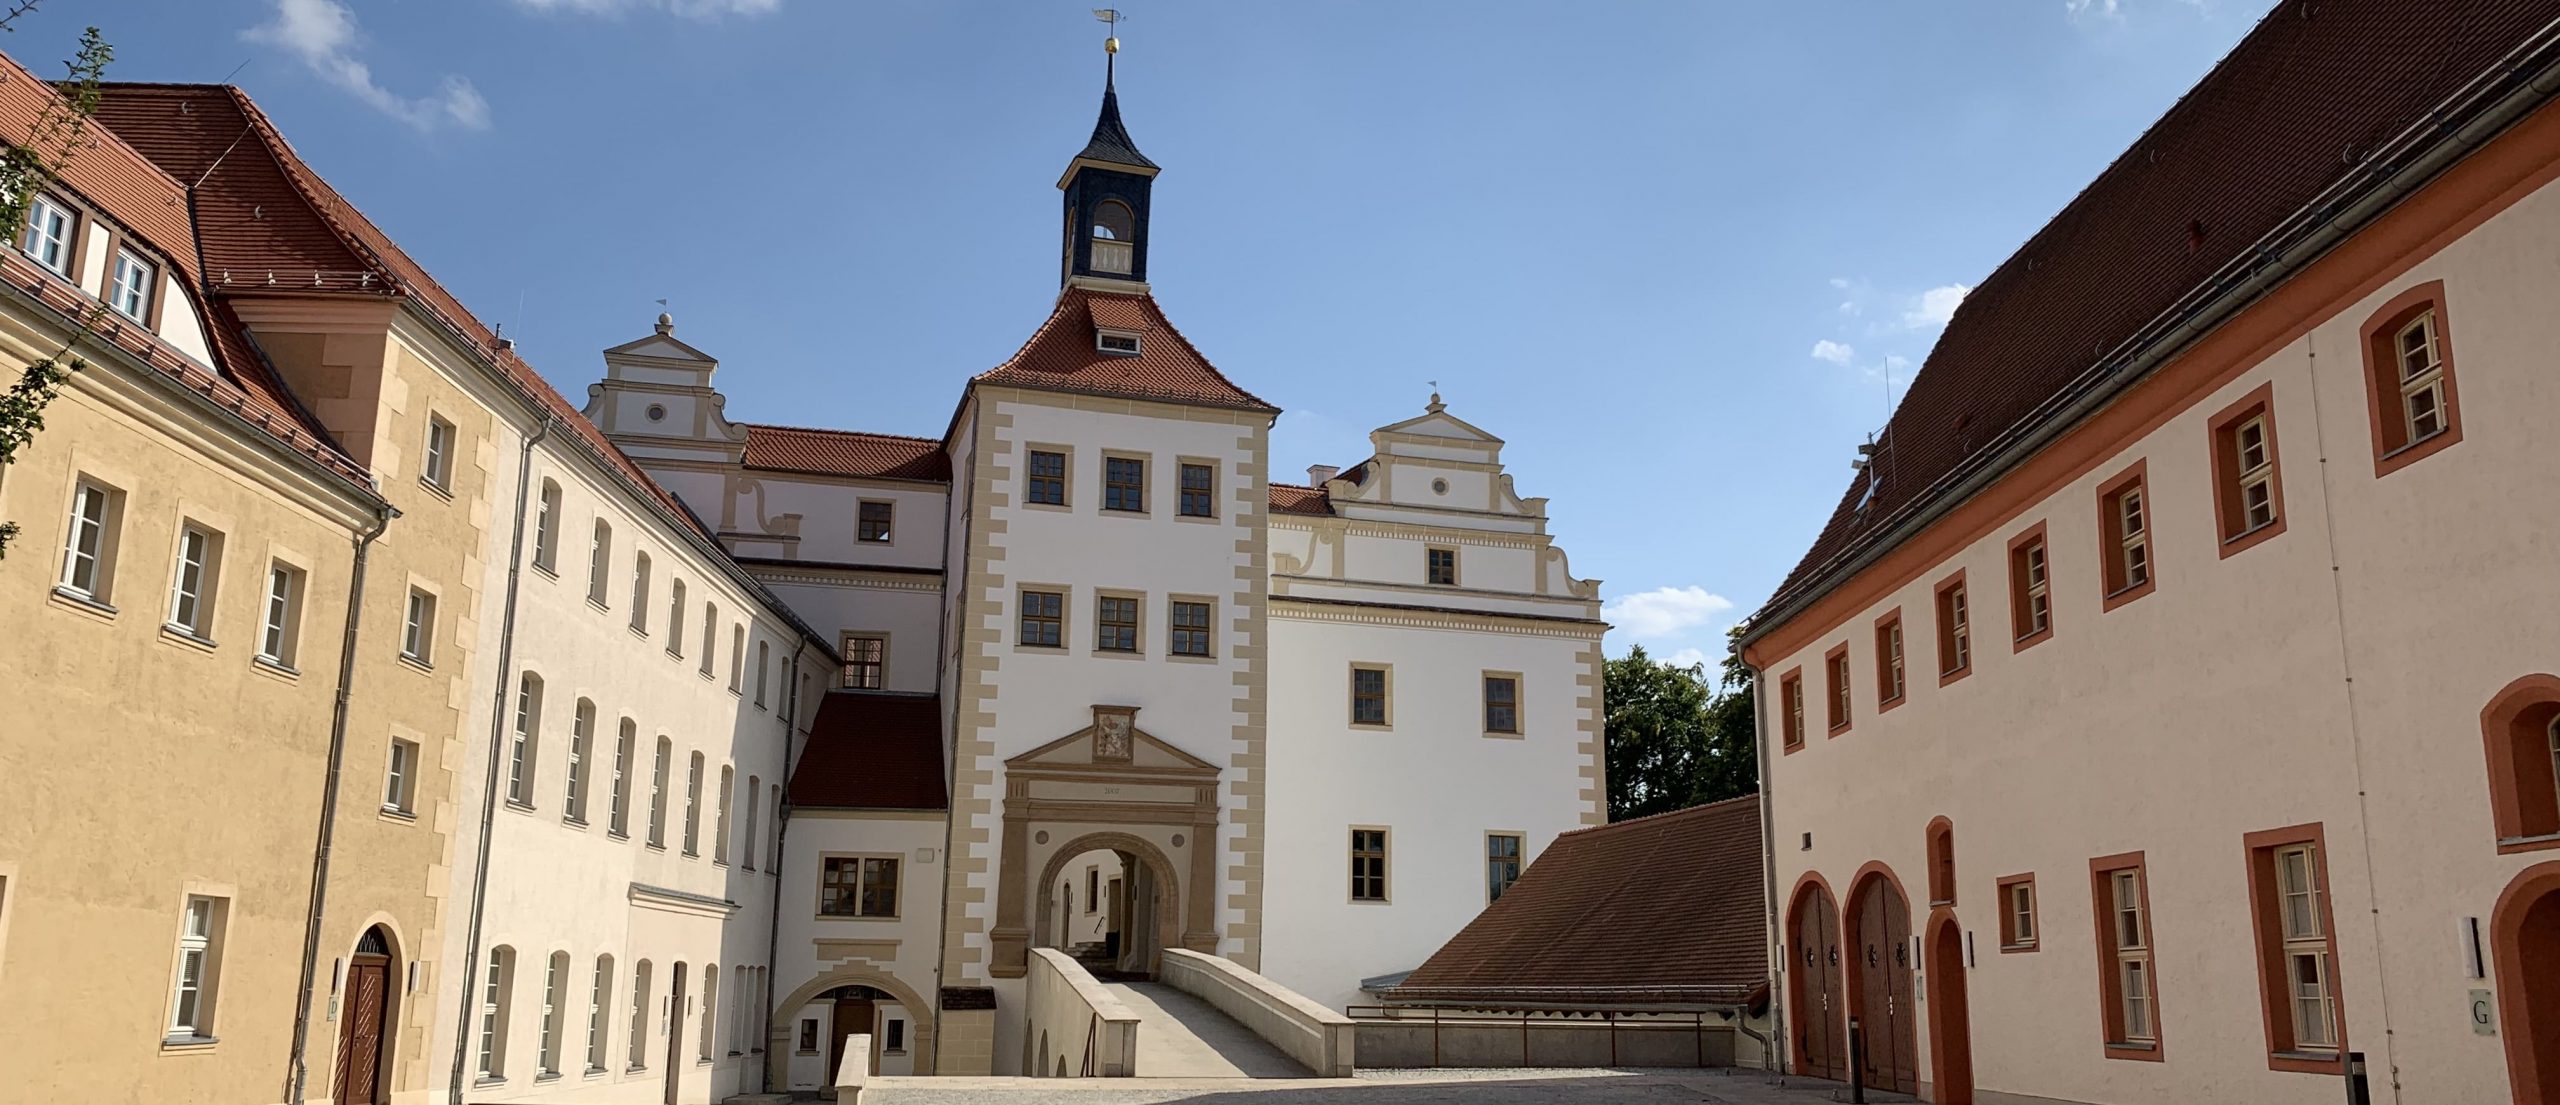 Finsterwalde Schloss und Nebengebäude